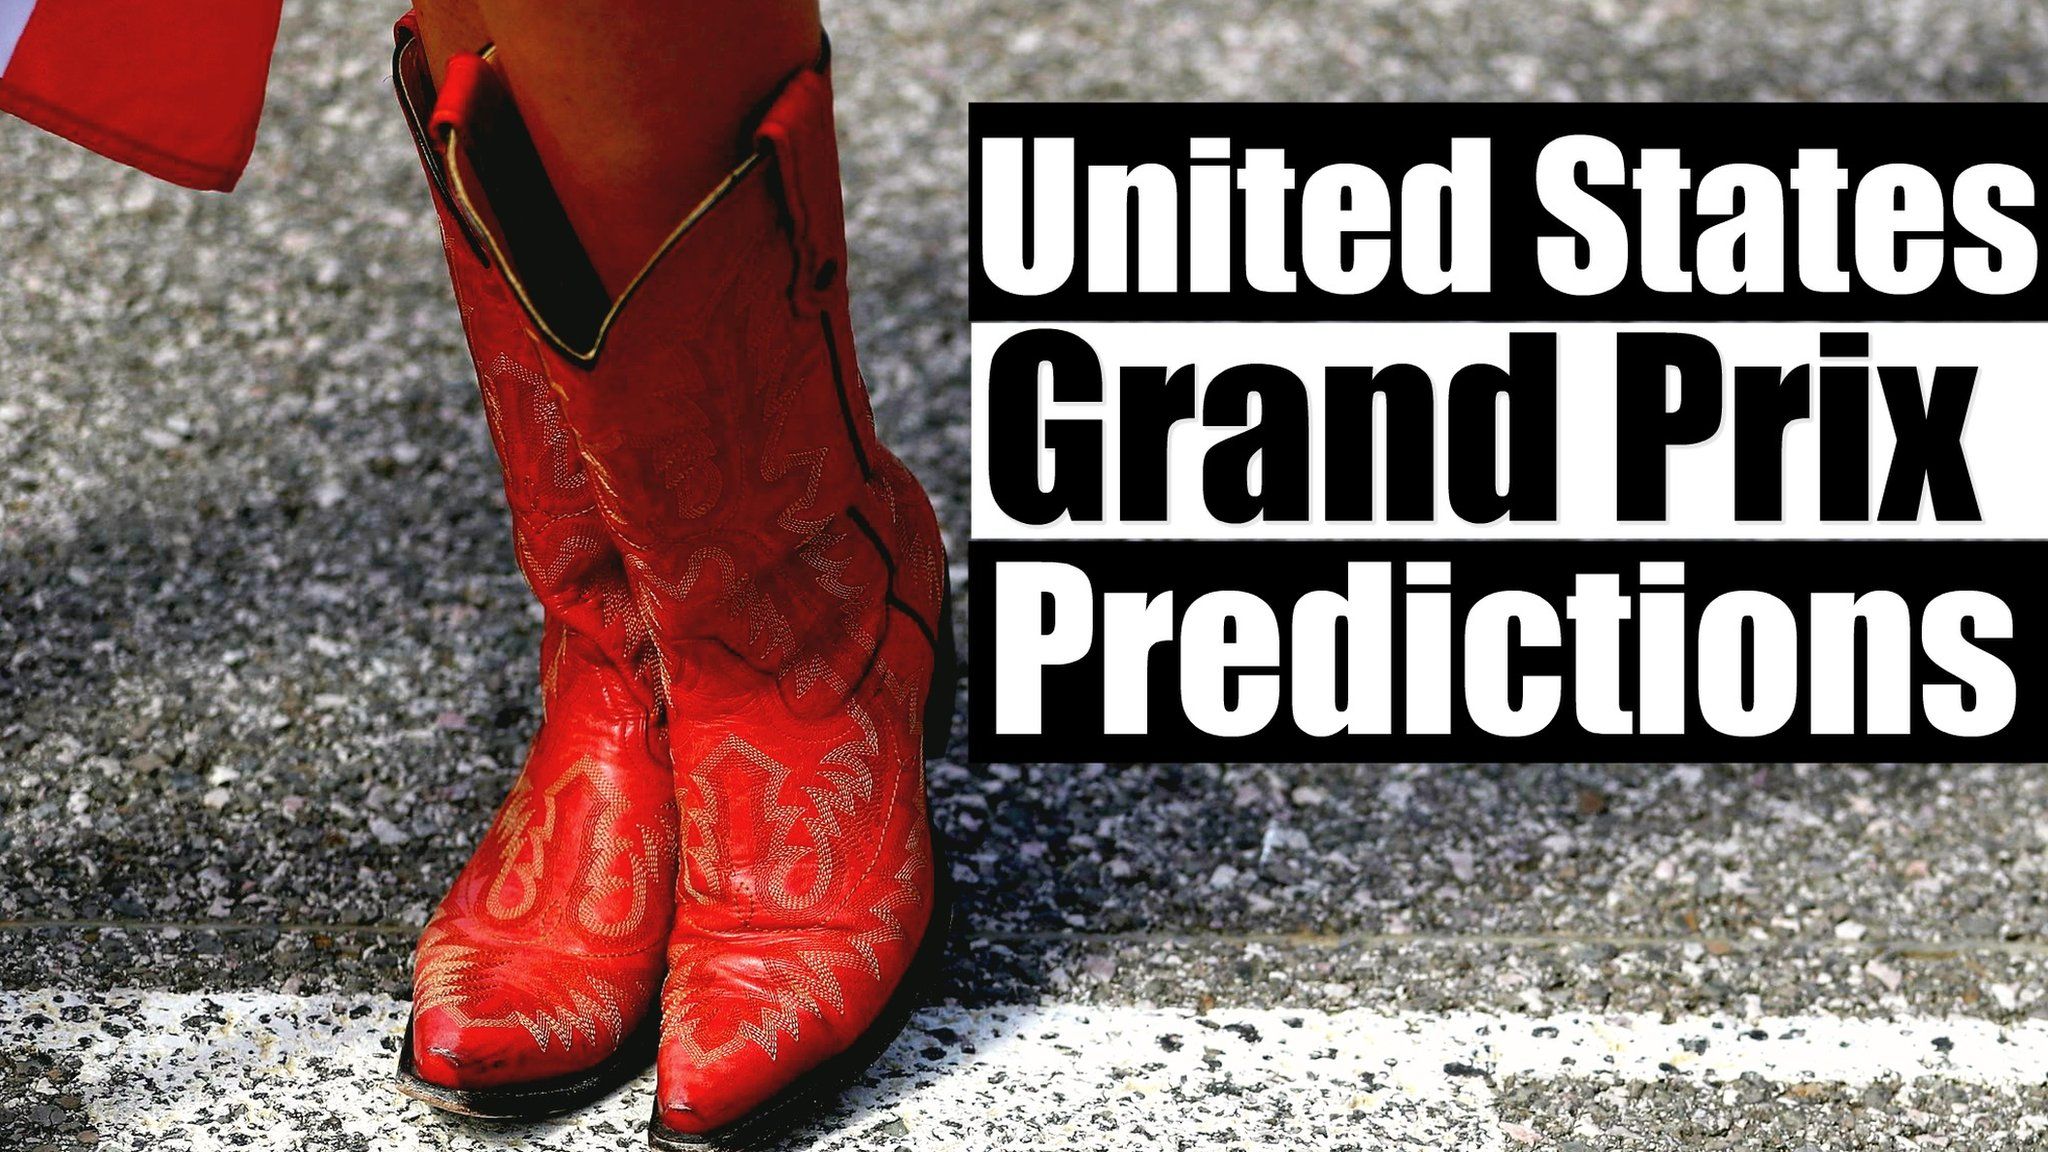 United States Grand Prix predictions